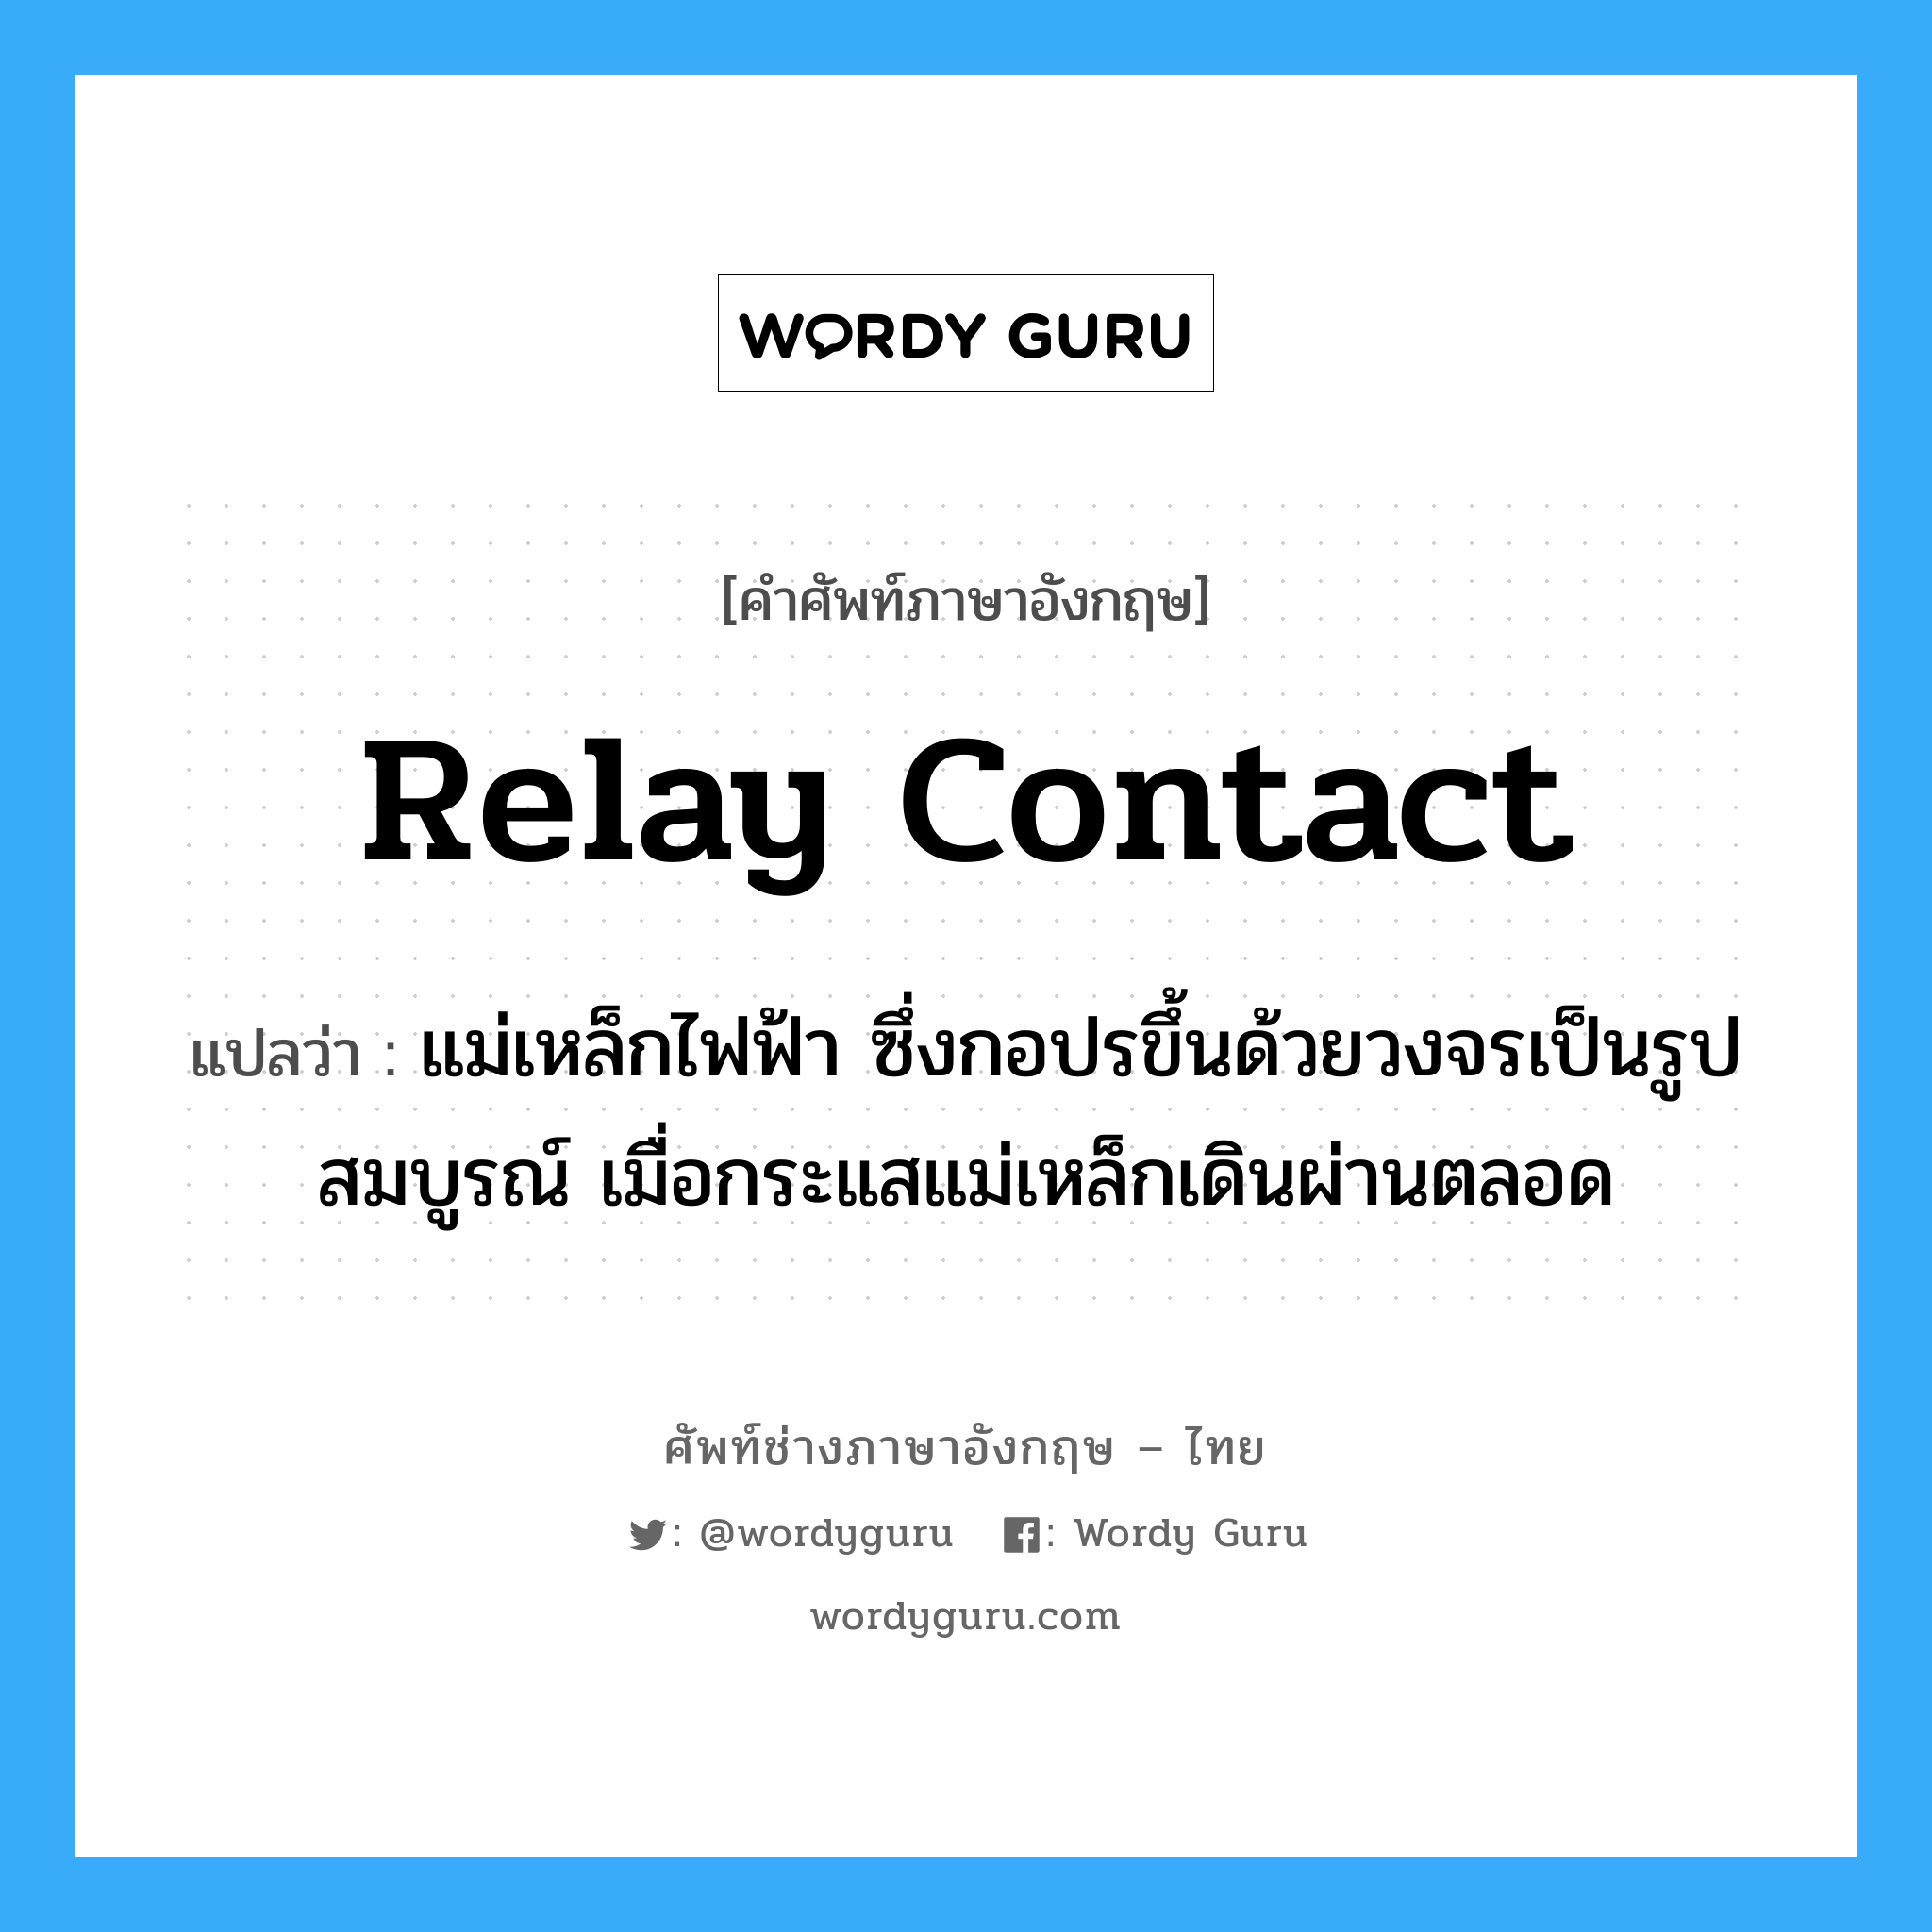 relay contact แปลว่า?, คำศัพท์ช่างภาษาอังกฤษ - ไทย relay contact คำศัพท์ภาษาอังกฤษ relay contact แปลว่า แม่เหล็กไฟฟ้า ซึ่งกอปรขึ้นด้วยวงจรเป็นรูปสมบูรณ์ เมื่อกระแสแม่เหล็กเดินผ่านตลอด